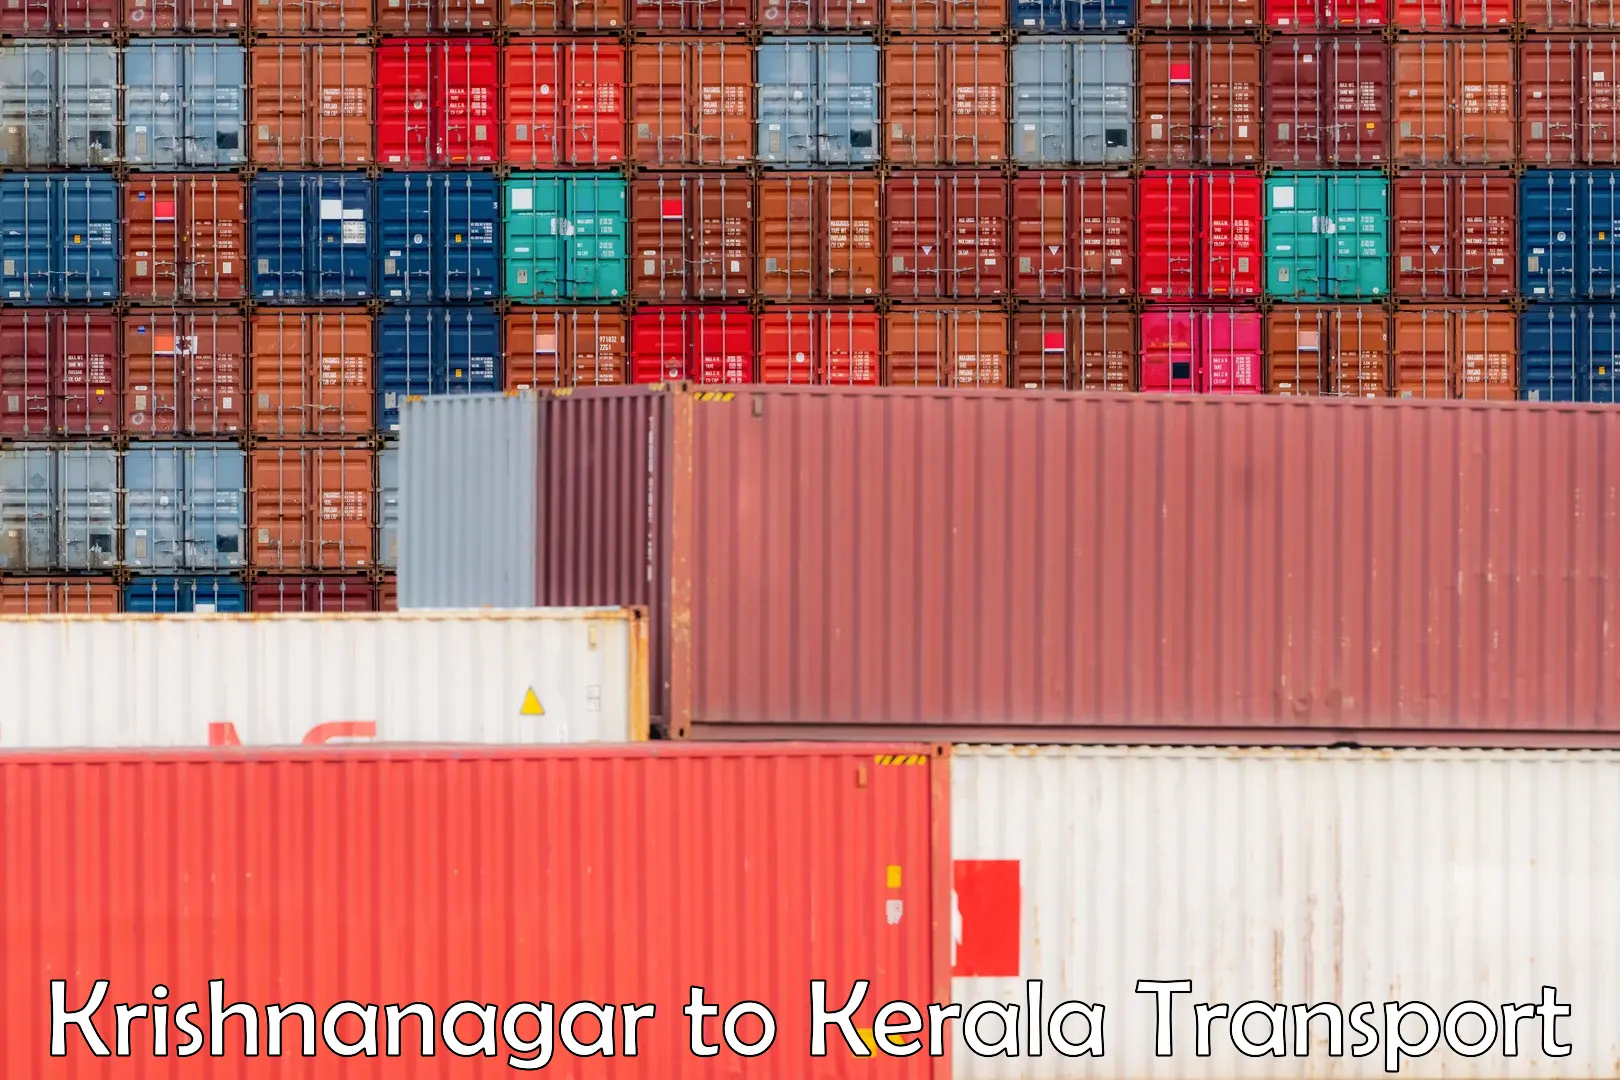 International cargo transportation services Krishnanagar to Karunagappally